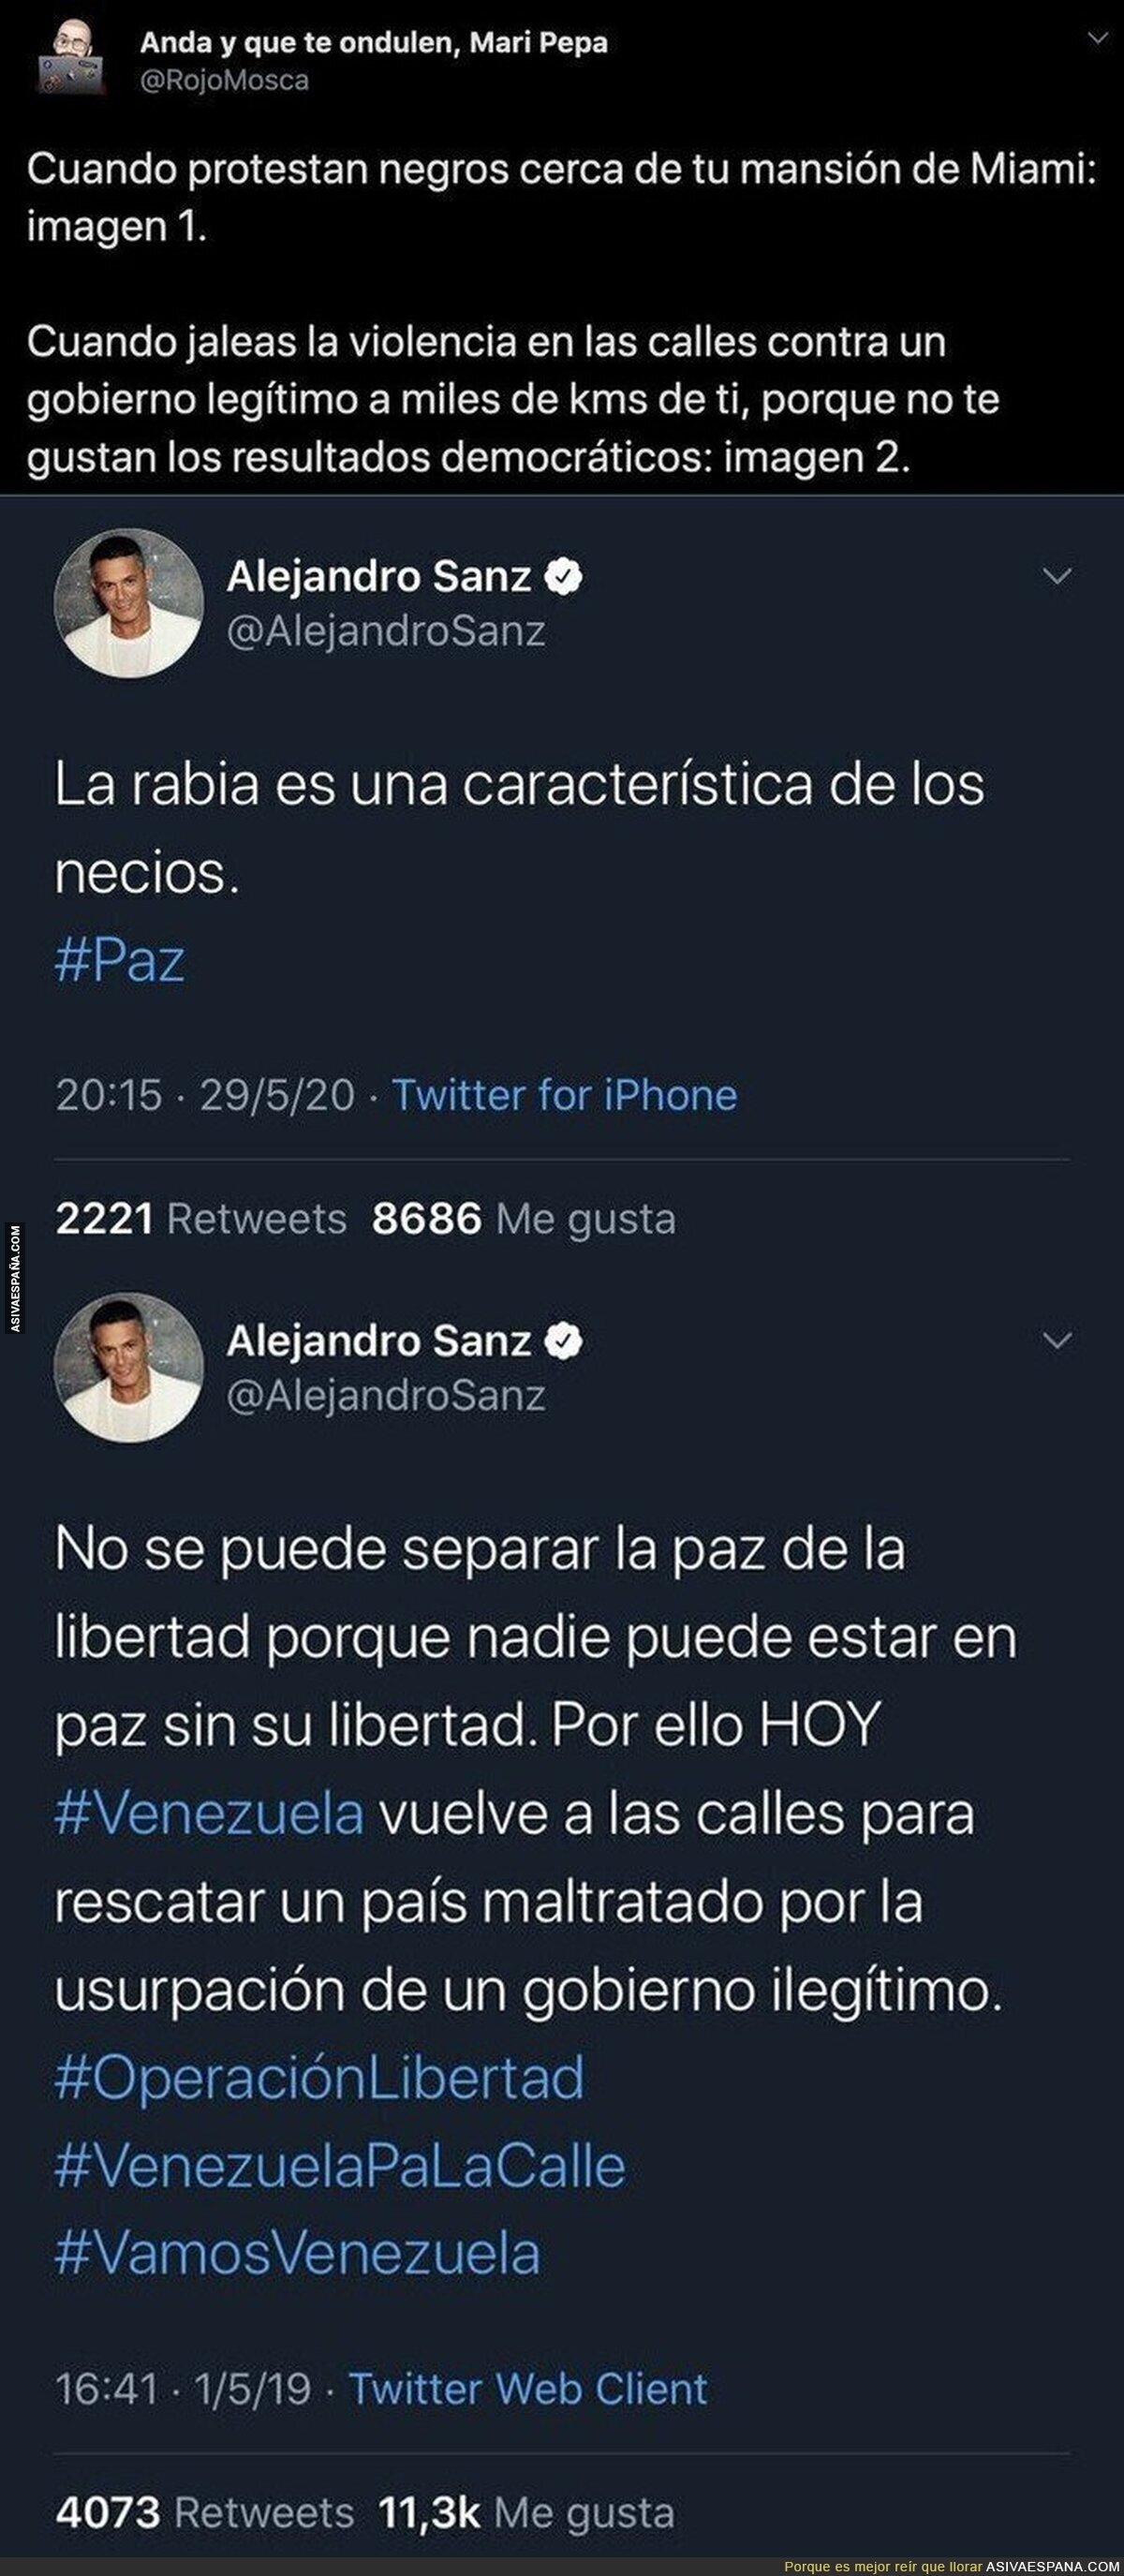 El doble rasero increíble de Alejandro Sanz cuando la gente que protesta es negra o son venezolanos contra su legítimo gobierno